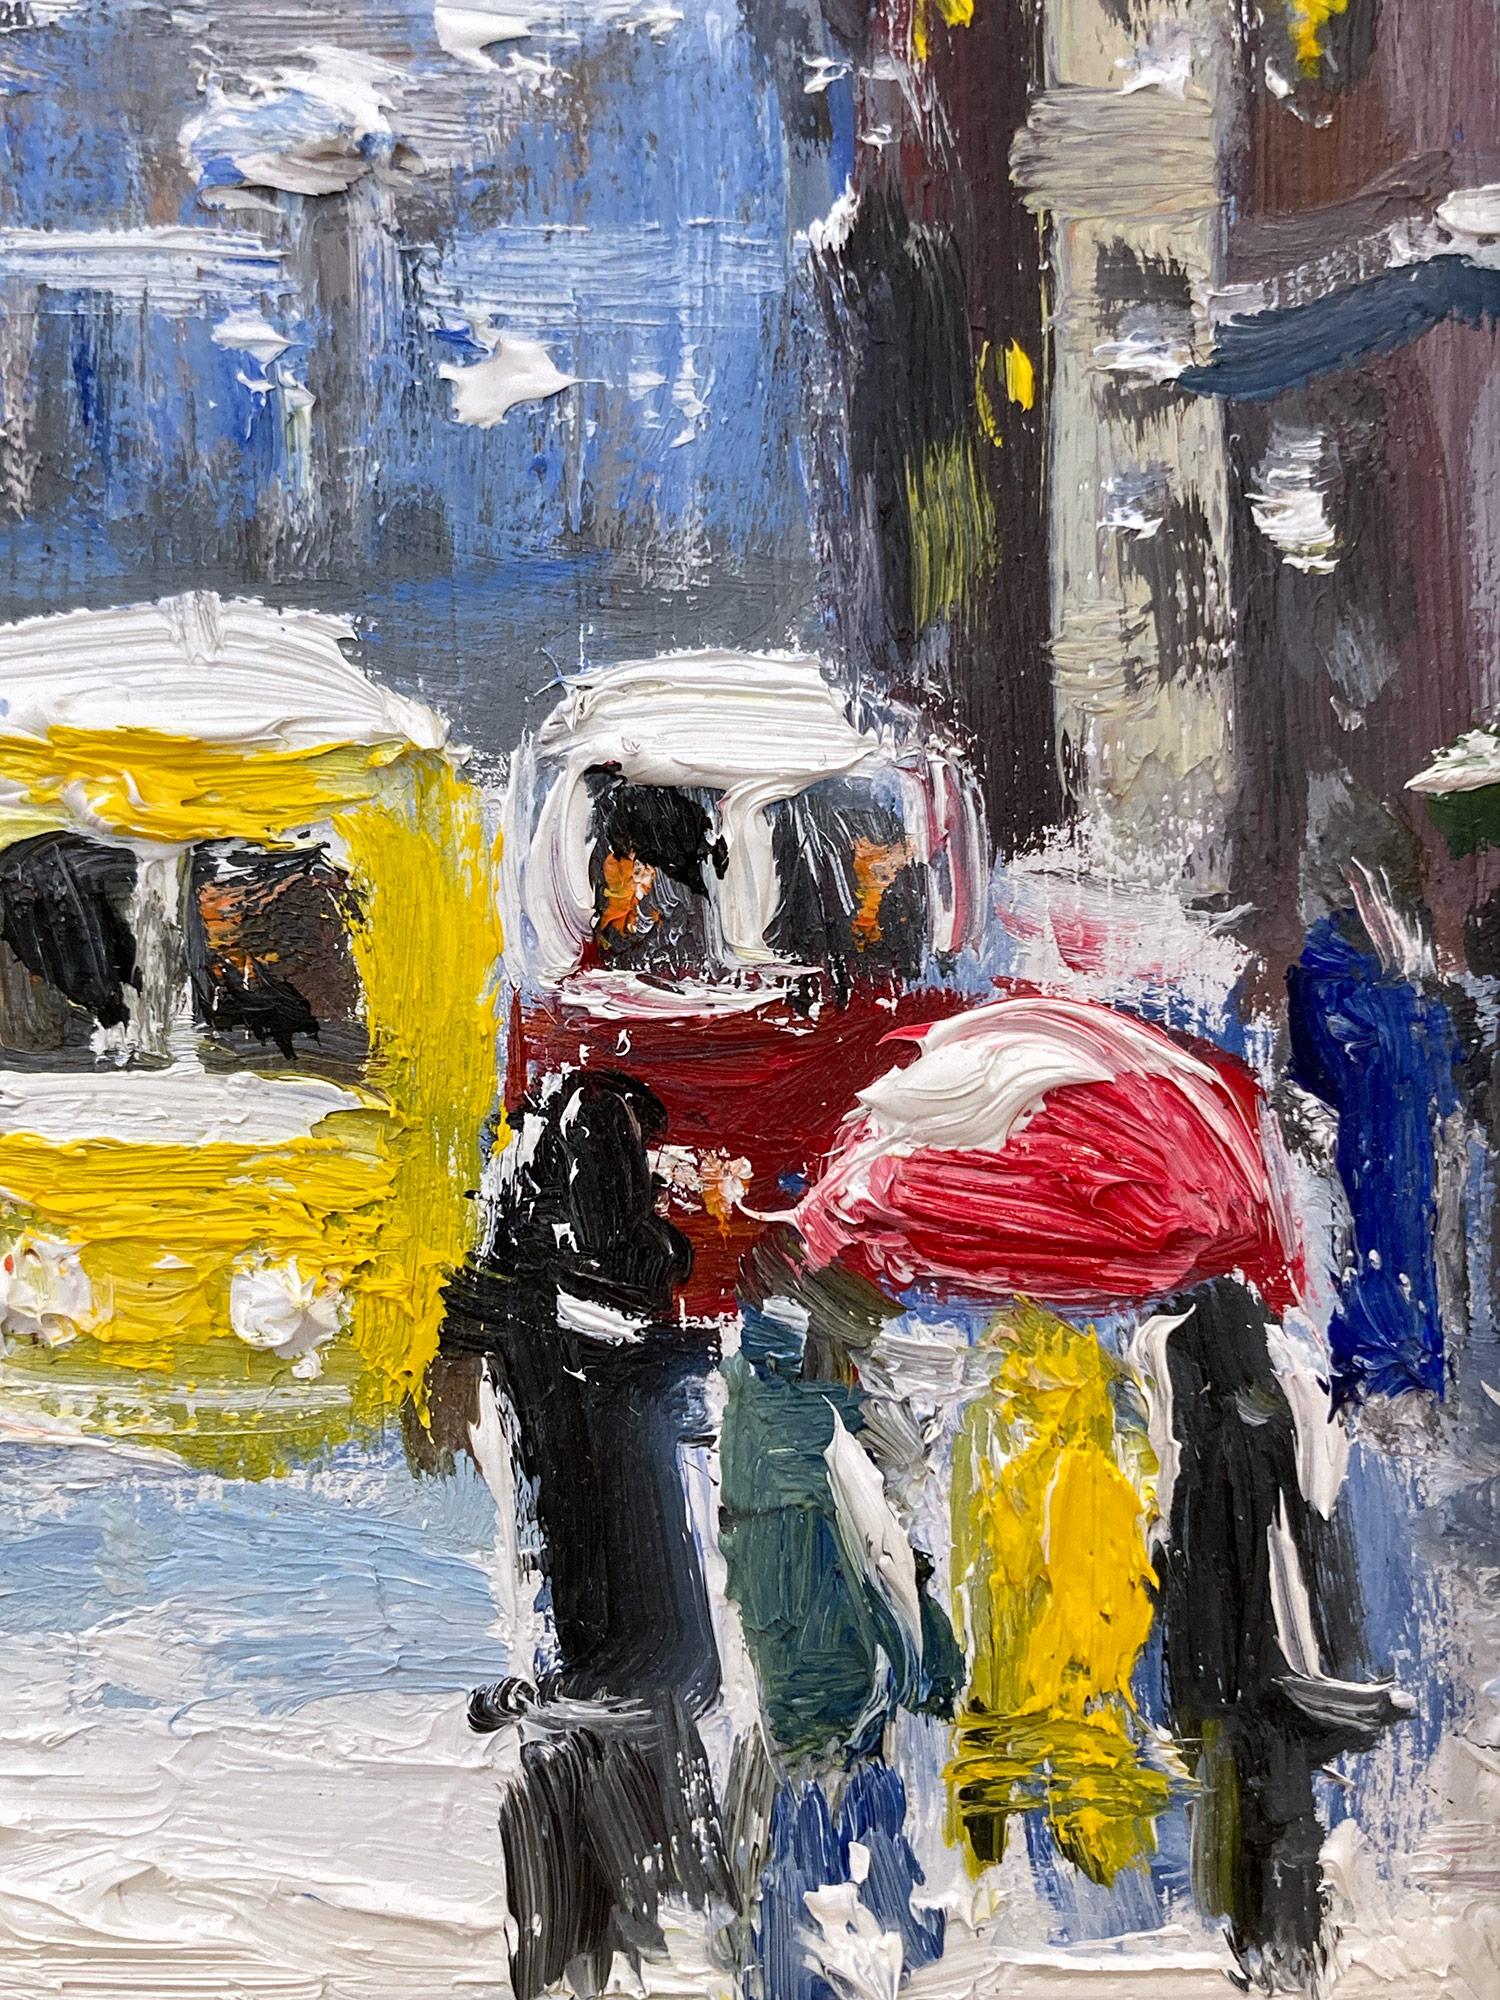 „Snow on Downtown Wall St“ NYC Impressionistisches Ölgemälde im Stil von Guy Wiggins (Amerikanischer Impressionismus), Painting, von Cindy Shaoul